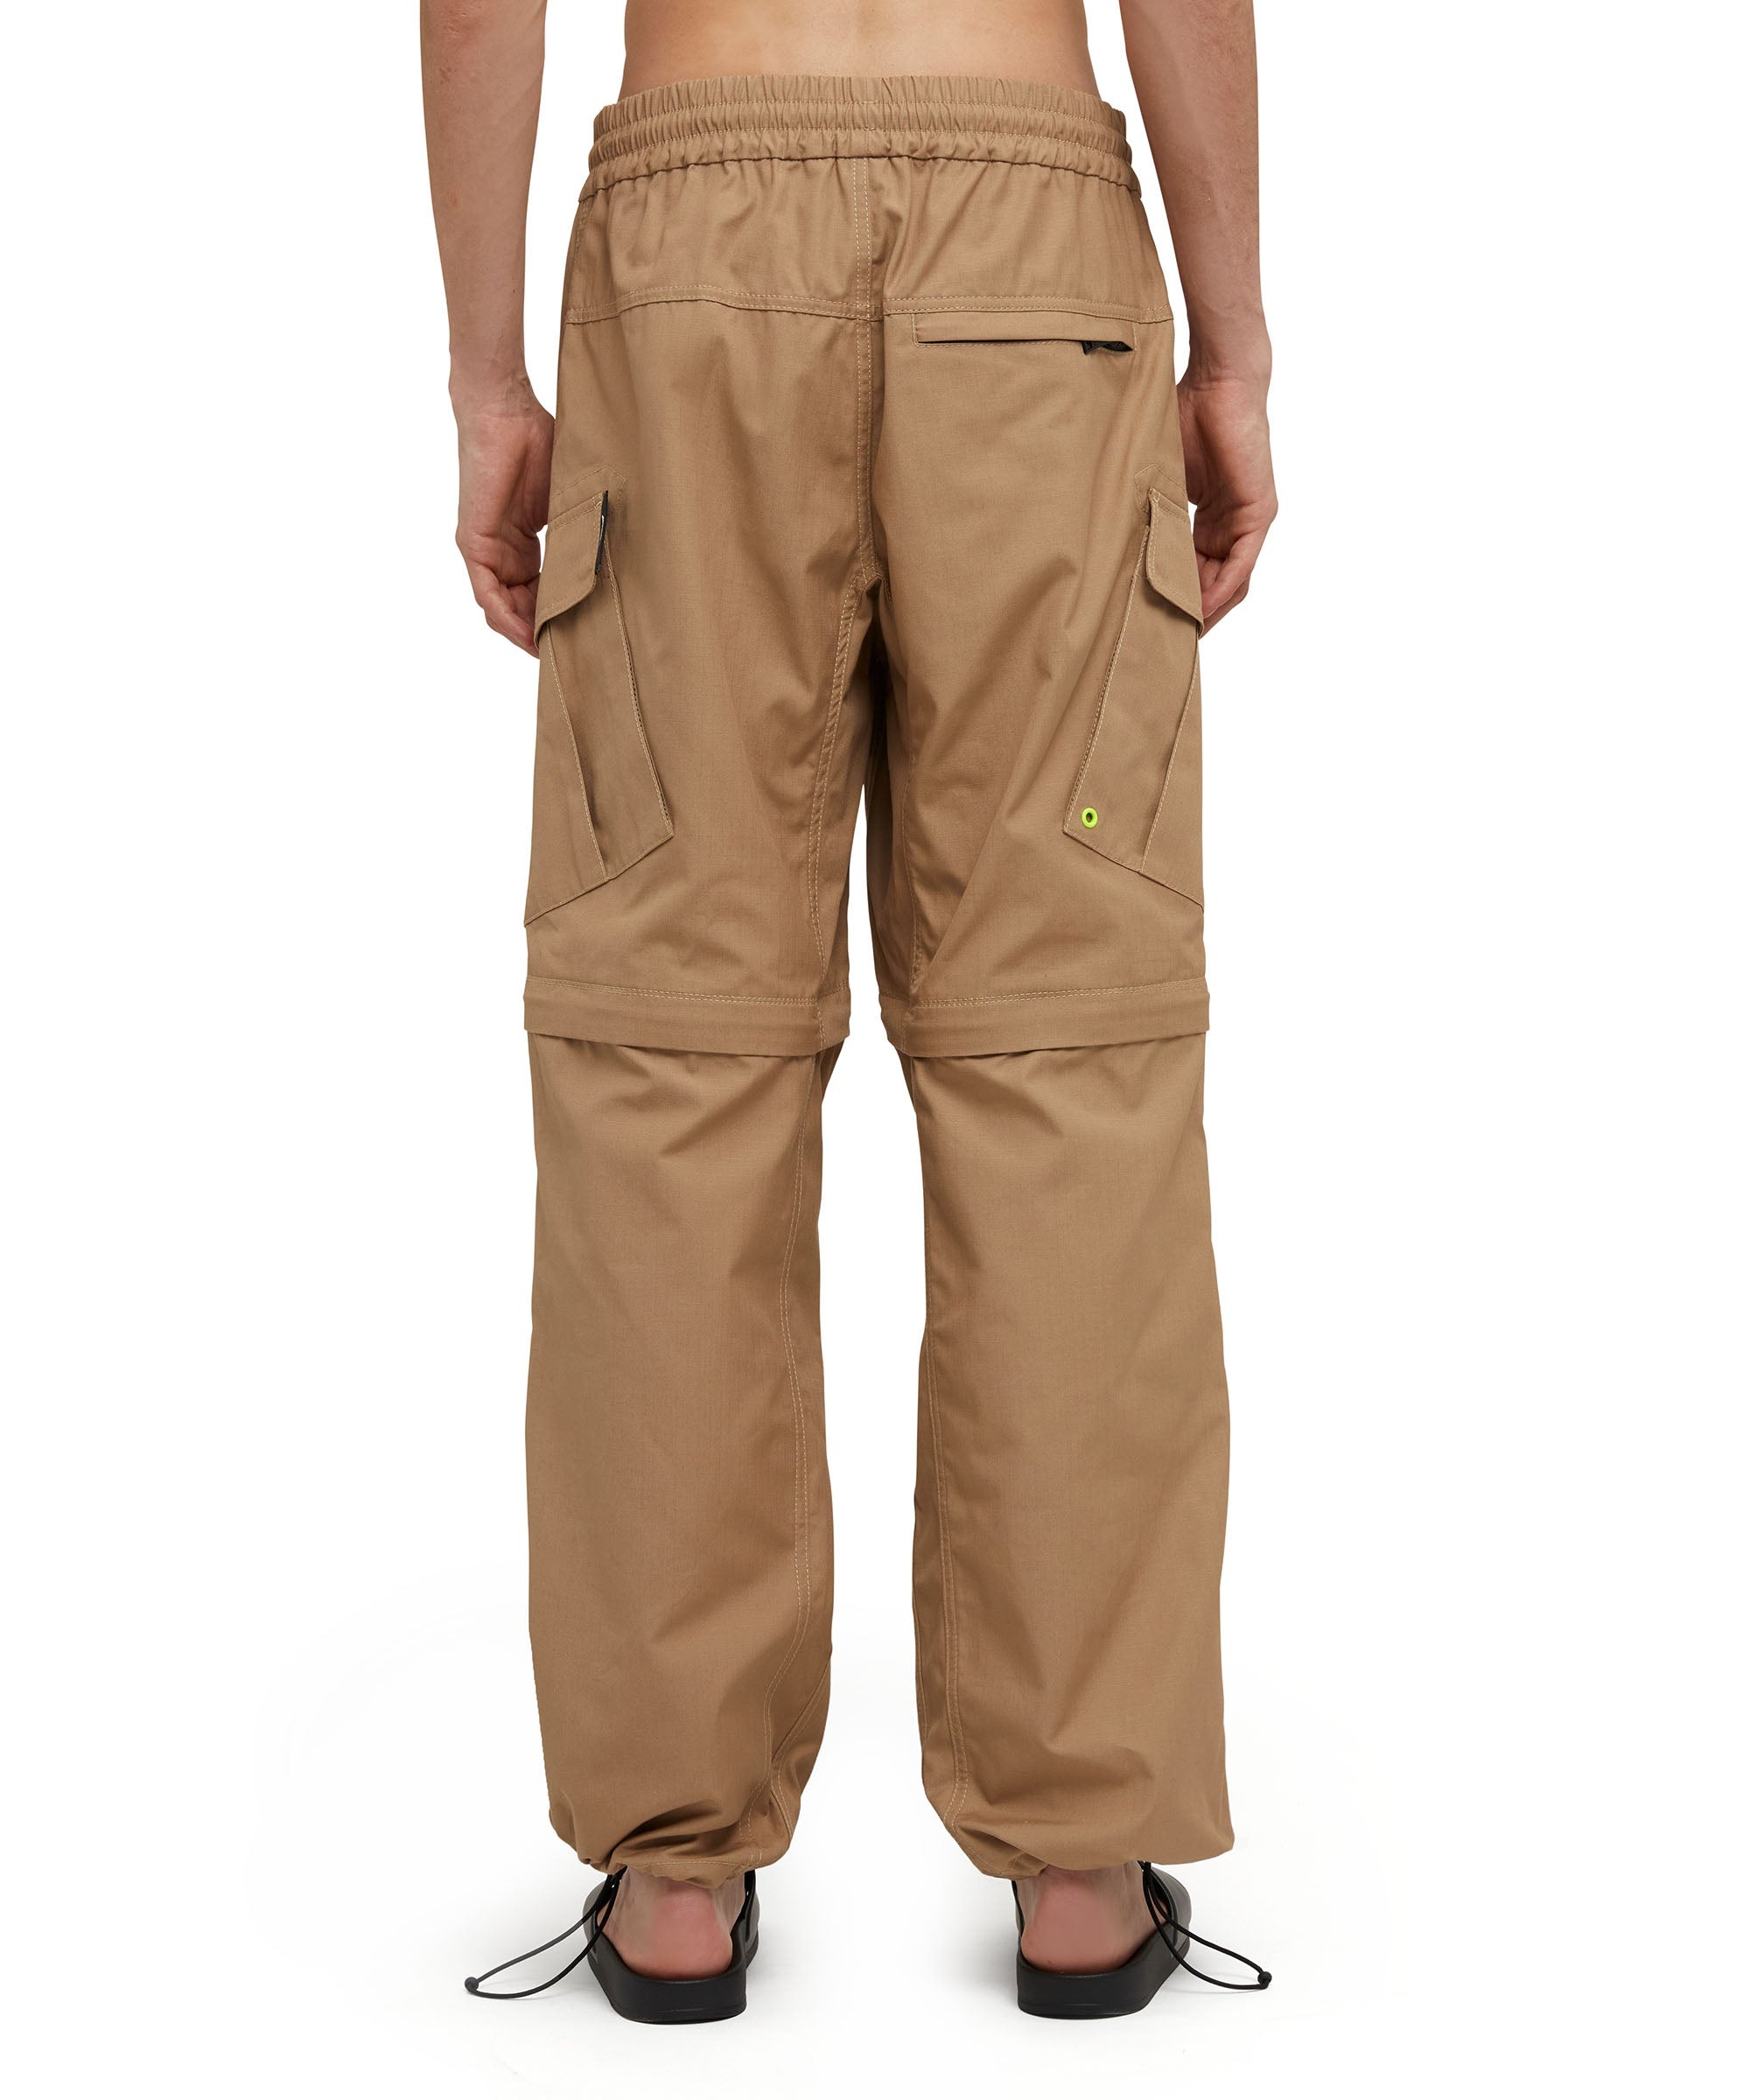 Solid color cotton cargo pants - 3